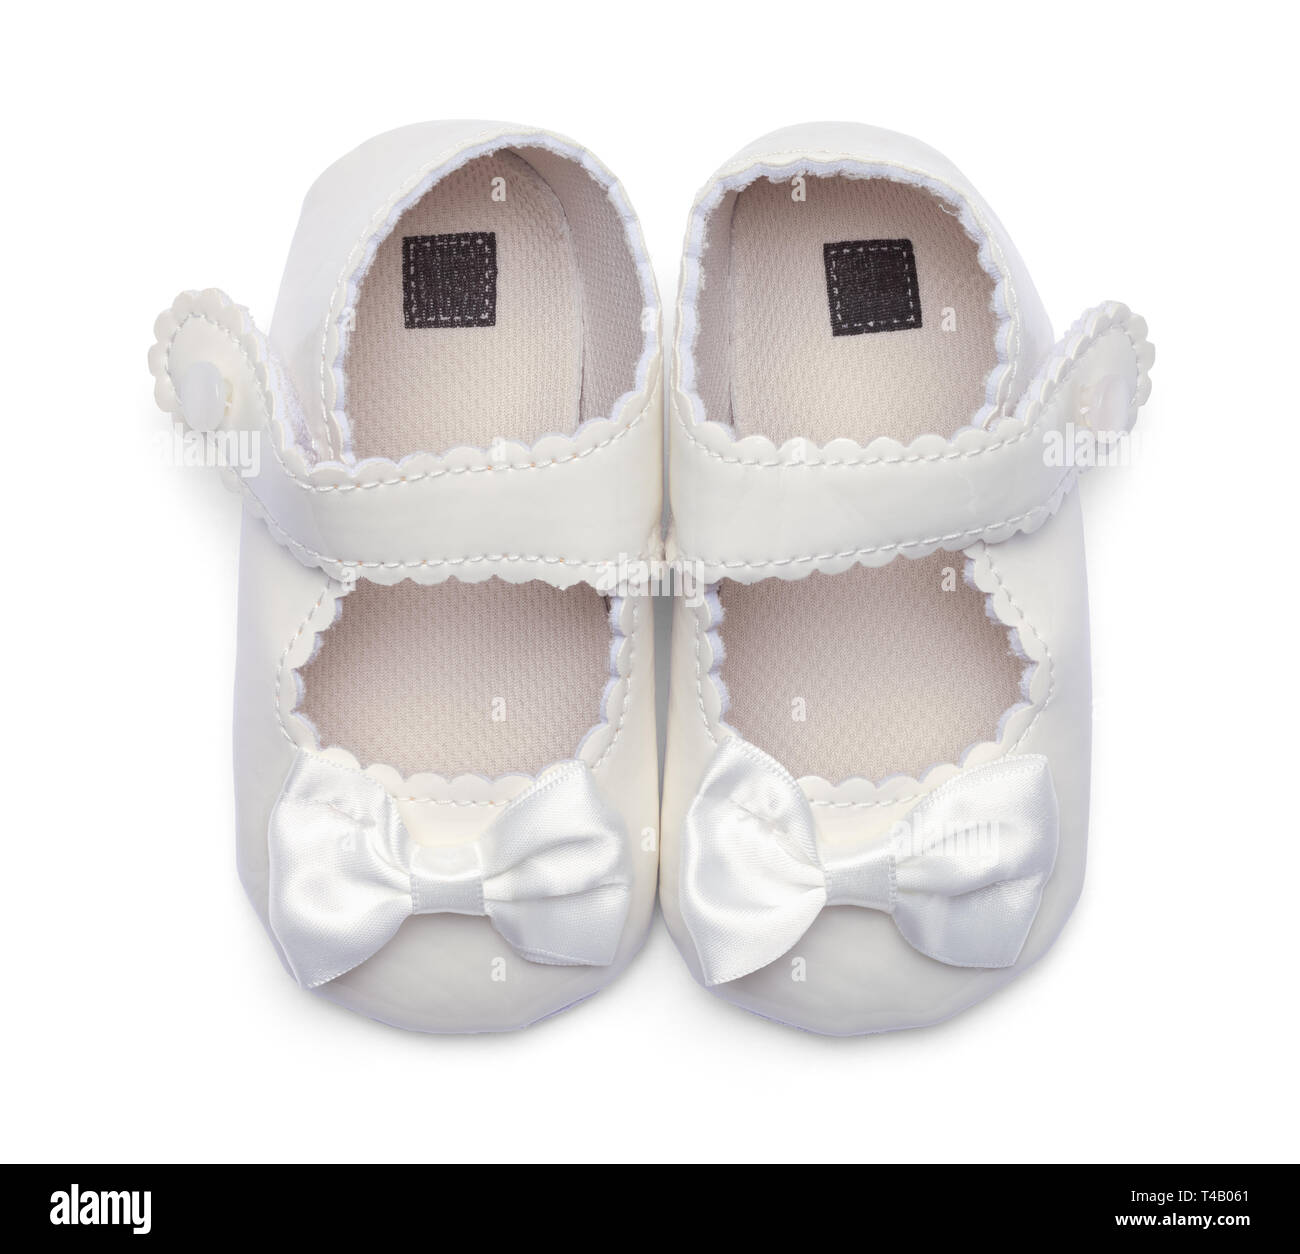 Madchen Baby Kleidung Schuhe Top View Isoliert Auf Weiss Stockfotografie Alamy